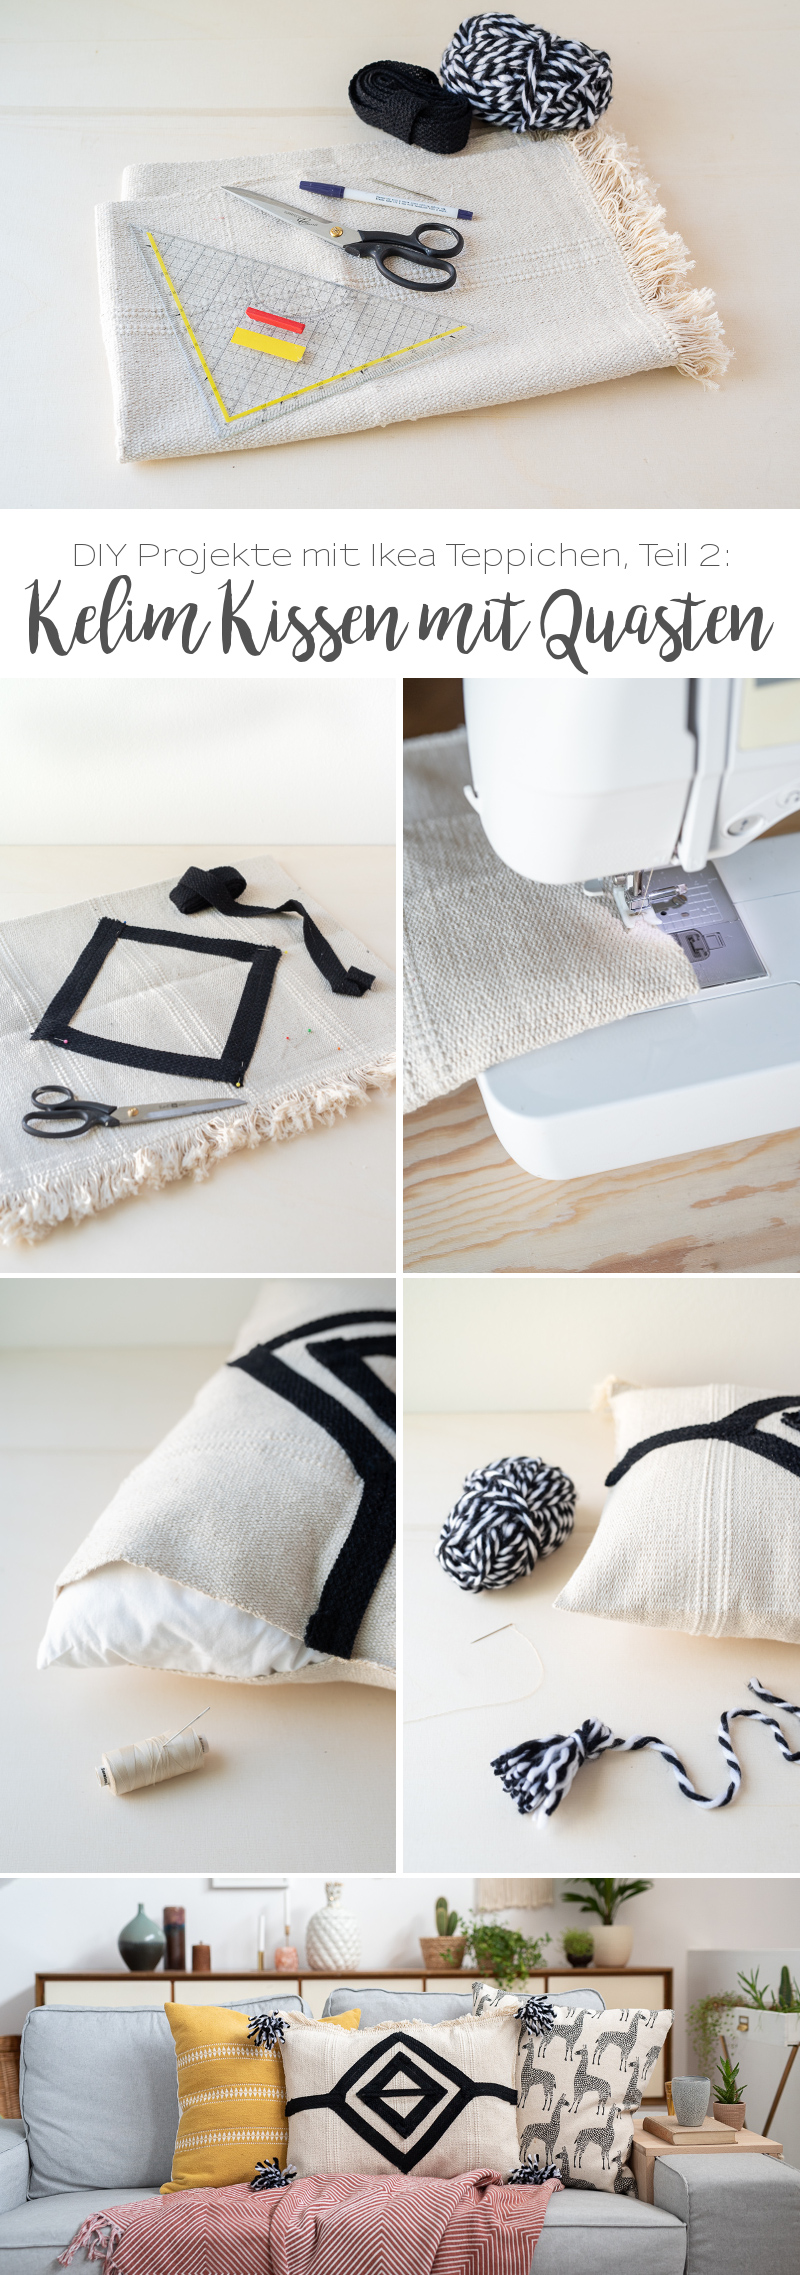 DIY Anleitung für einfache Kissen im Kelim Look aus Ikea Teppich mit Quasten als Deko für das Wohnzimmer im Boho Stil